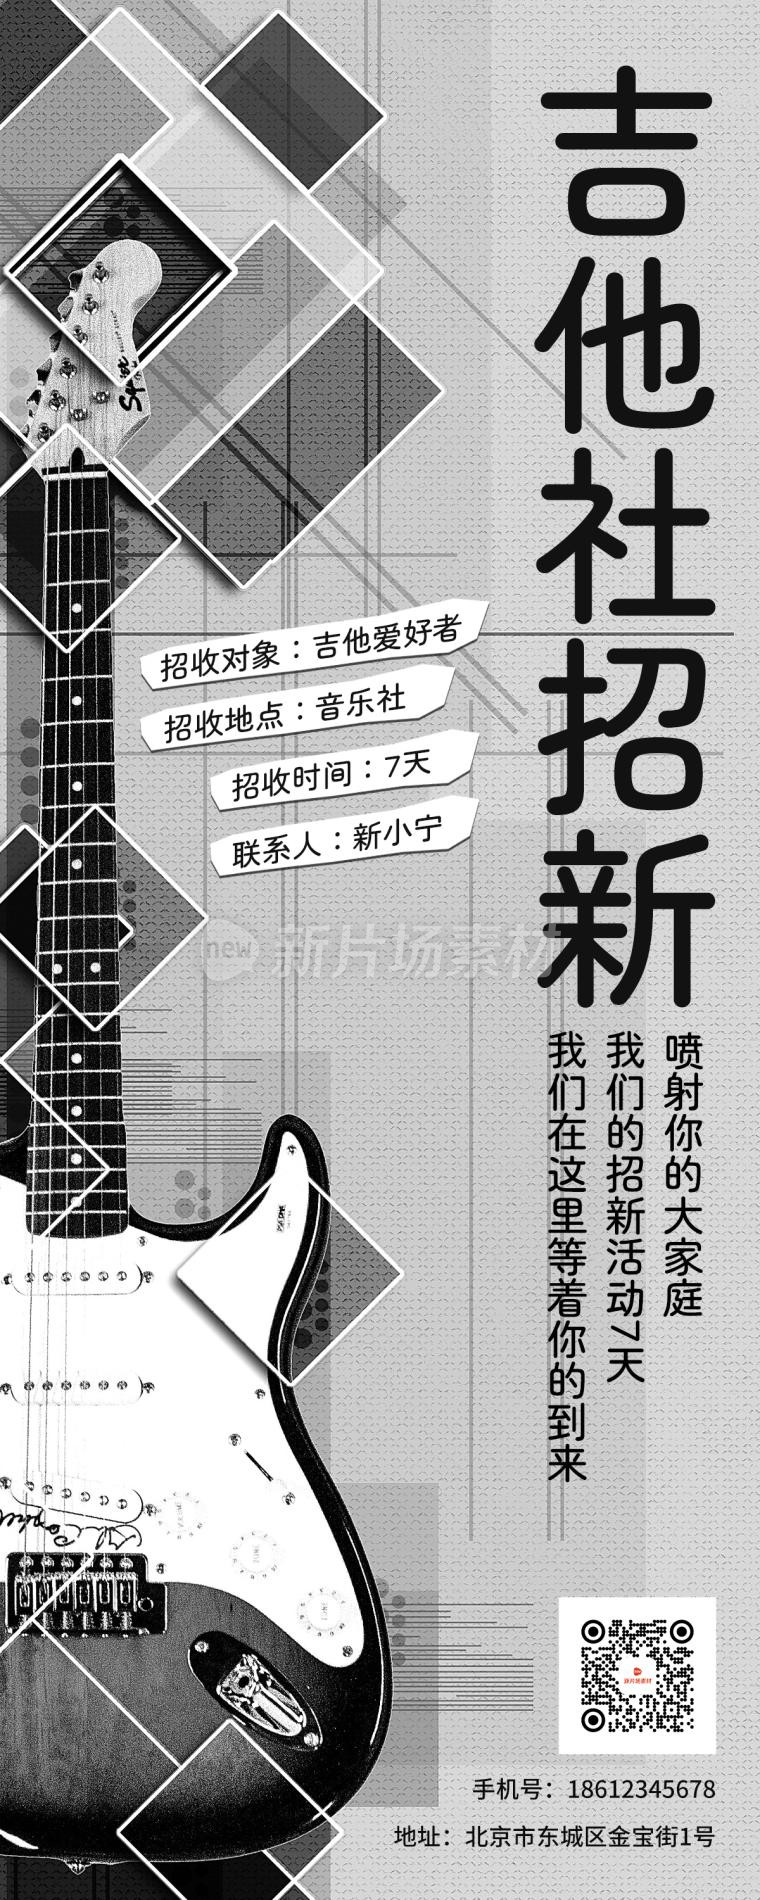 吉他社招新宣传简约灰色详情长图